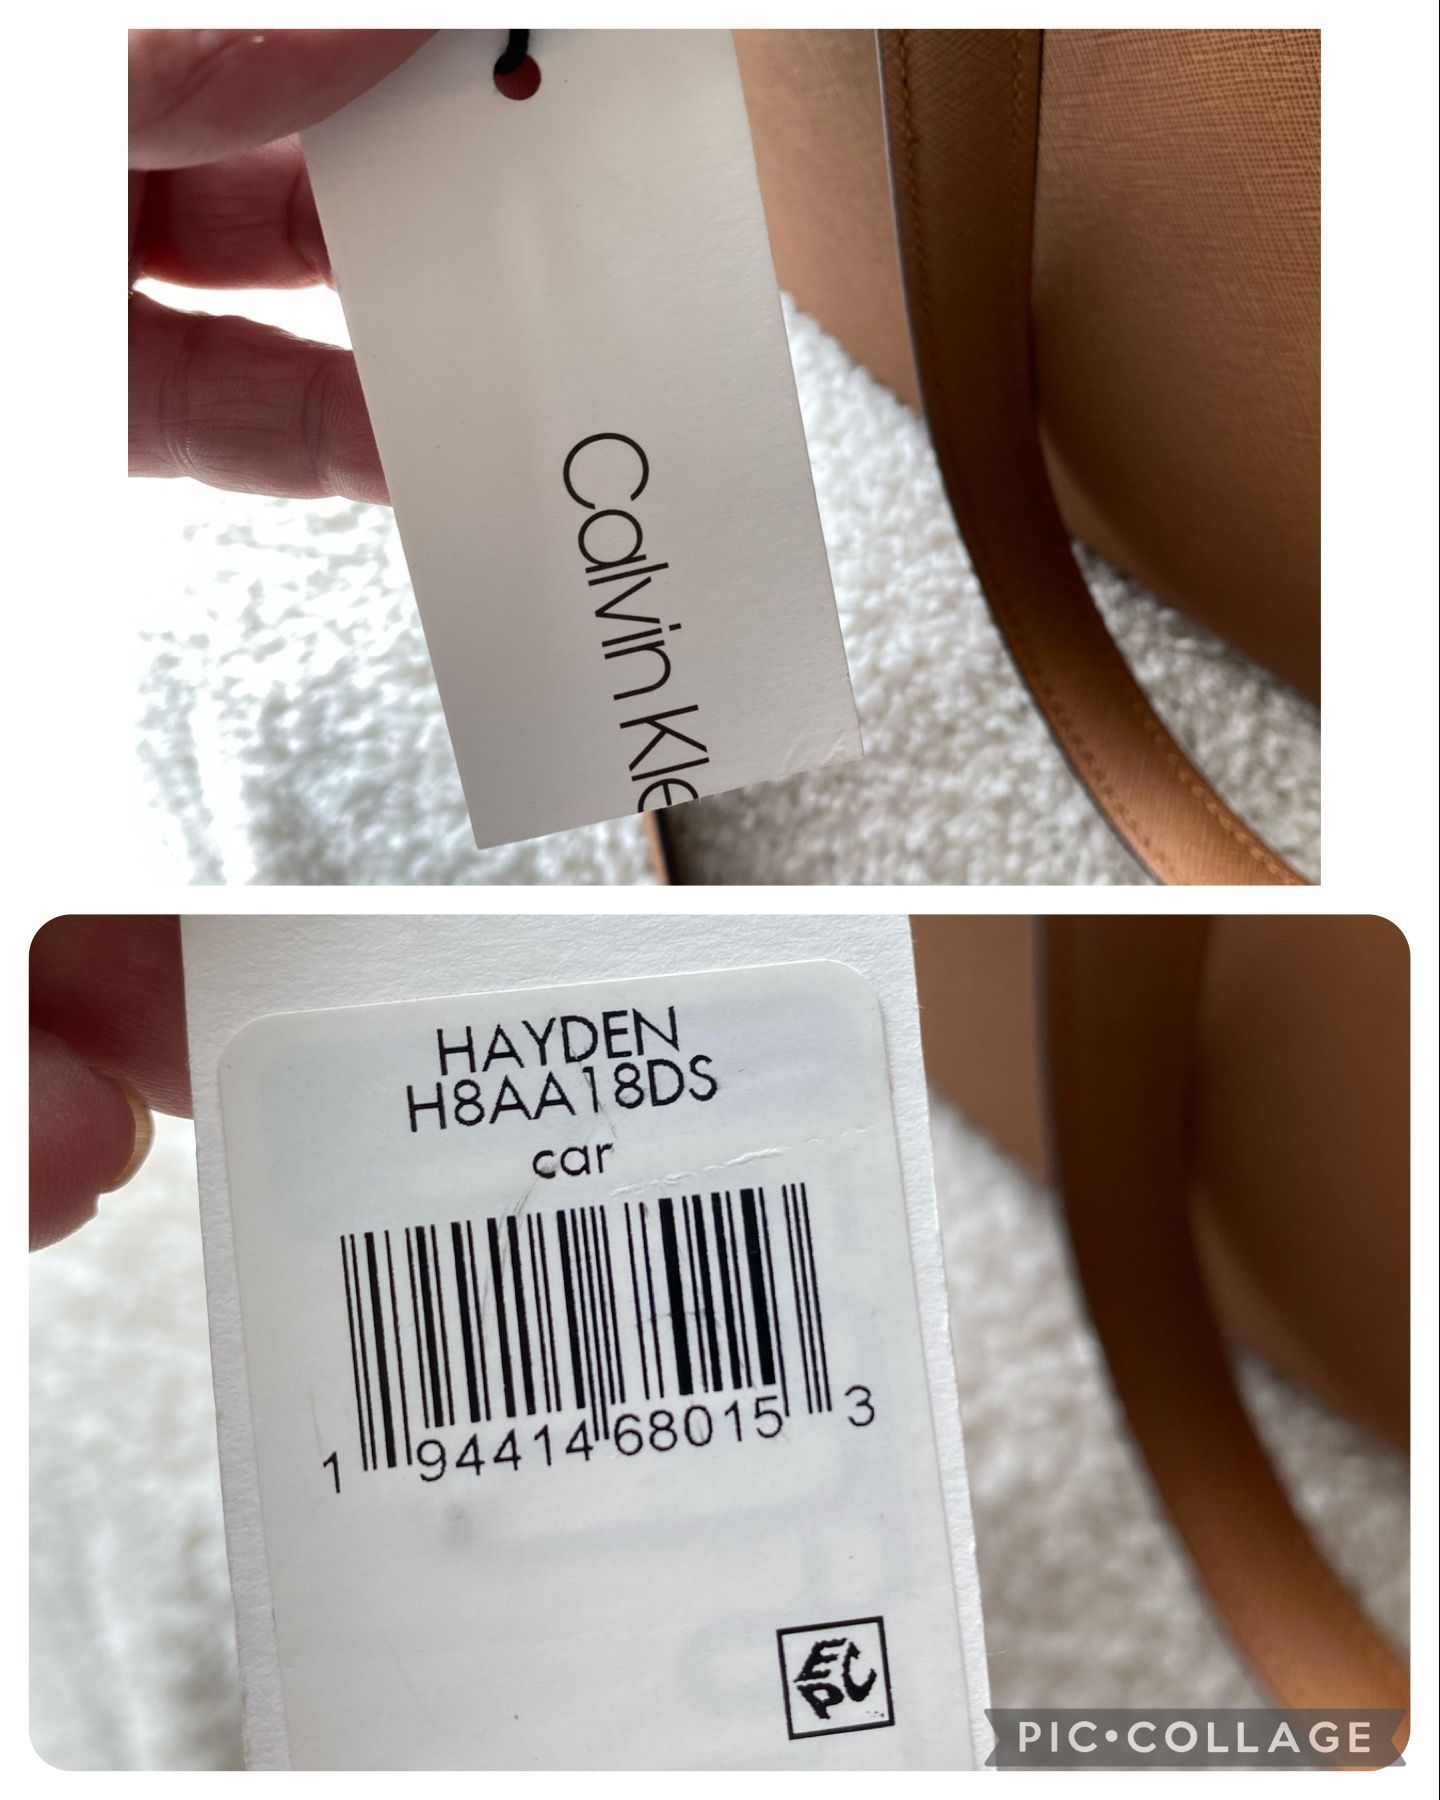 Calvin Klein top handle mini bag Tan - $15 (83% Off Retail) - From mandi